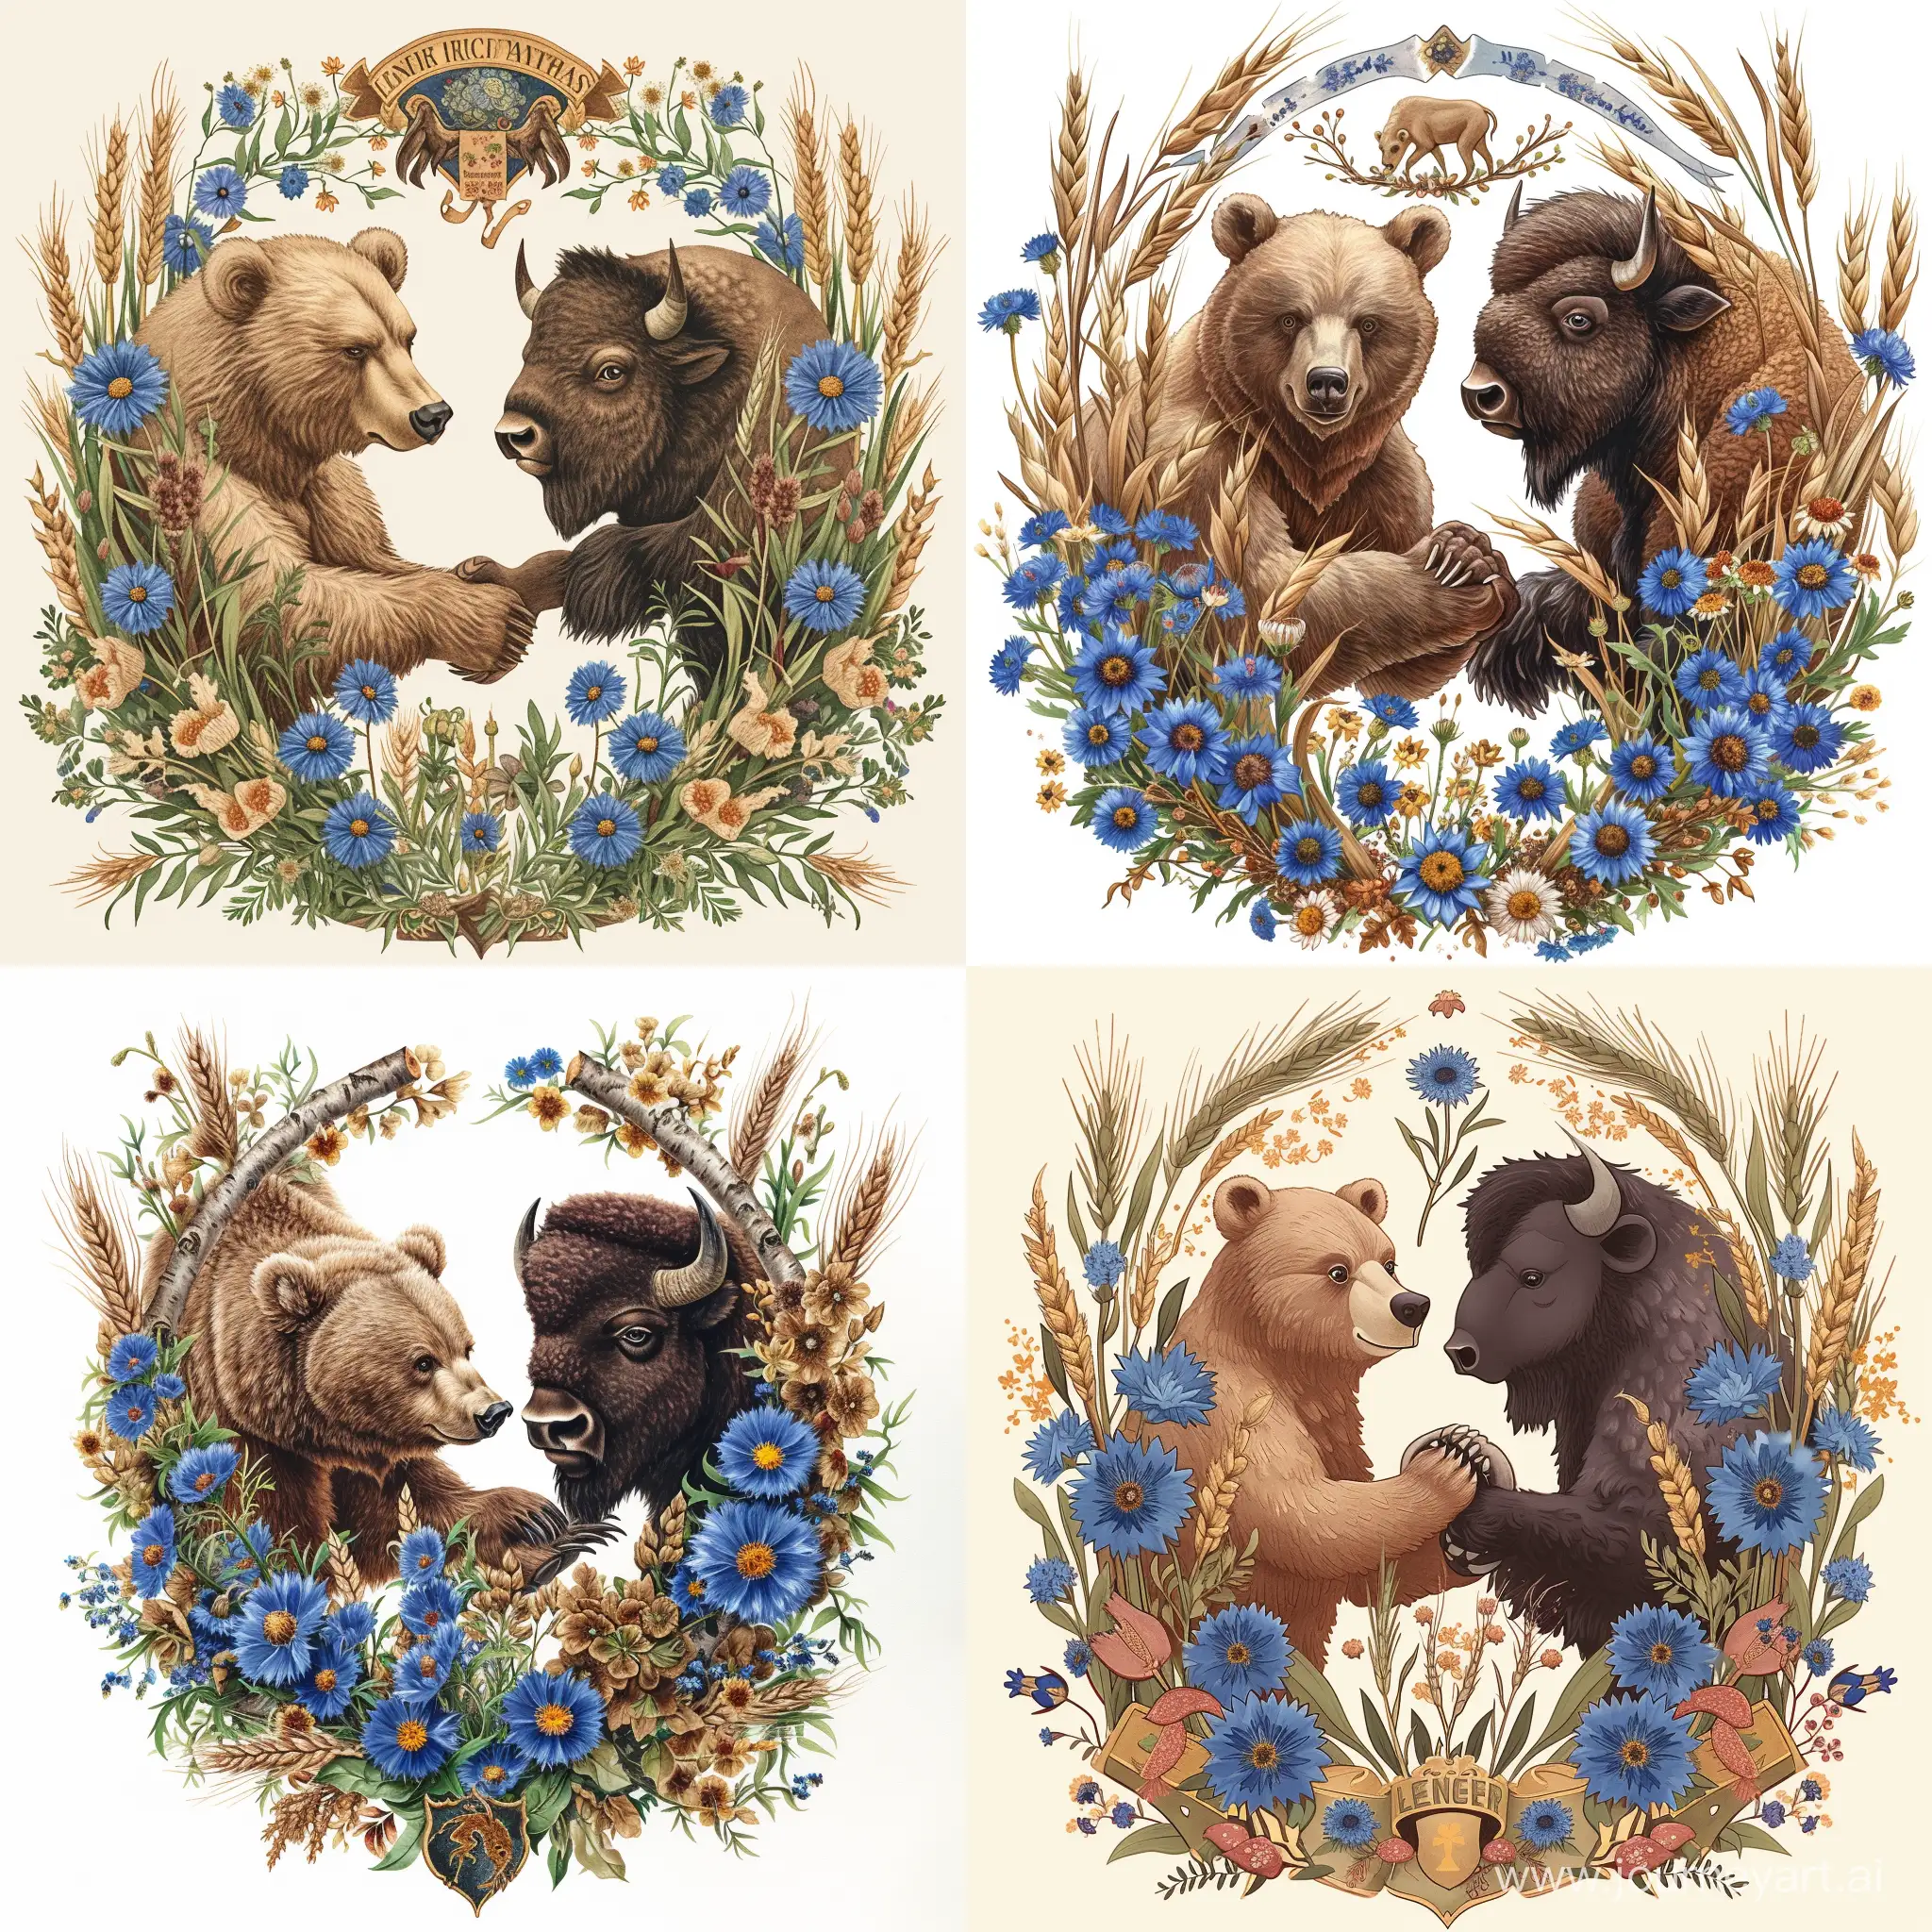 Герб, синие васильки, цветки льна, колосья пшеницы,  березовые ветки окружают  доброго медведя и доброго зубра,  медведь и зубр смотрят друг на друга и жмут друг другу лапы